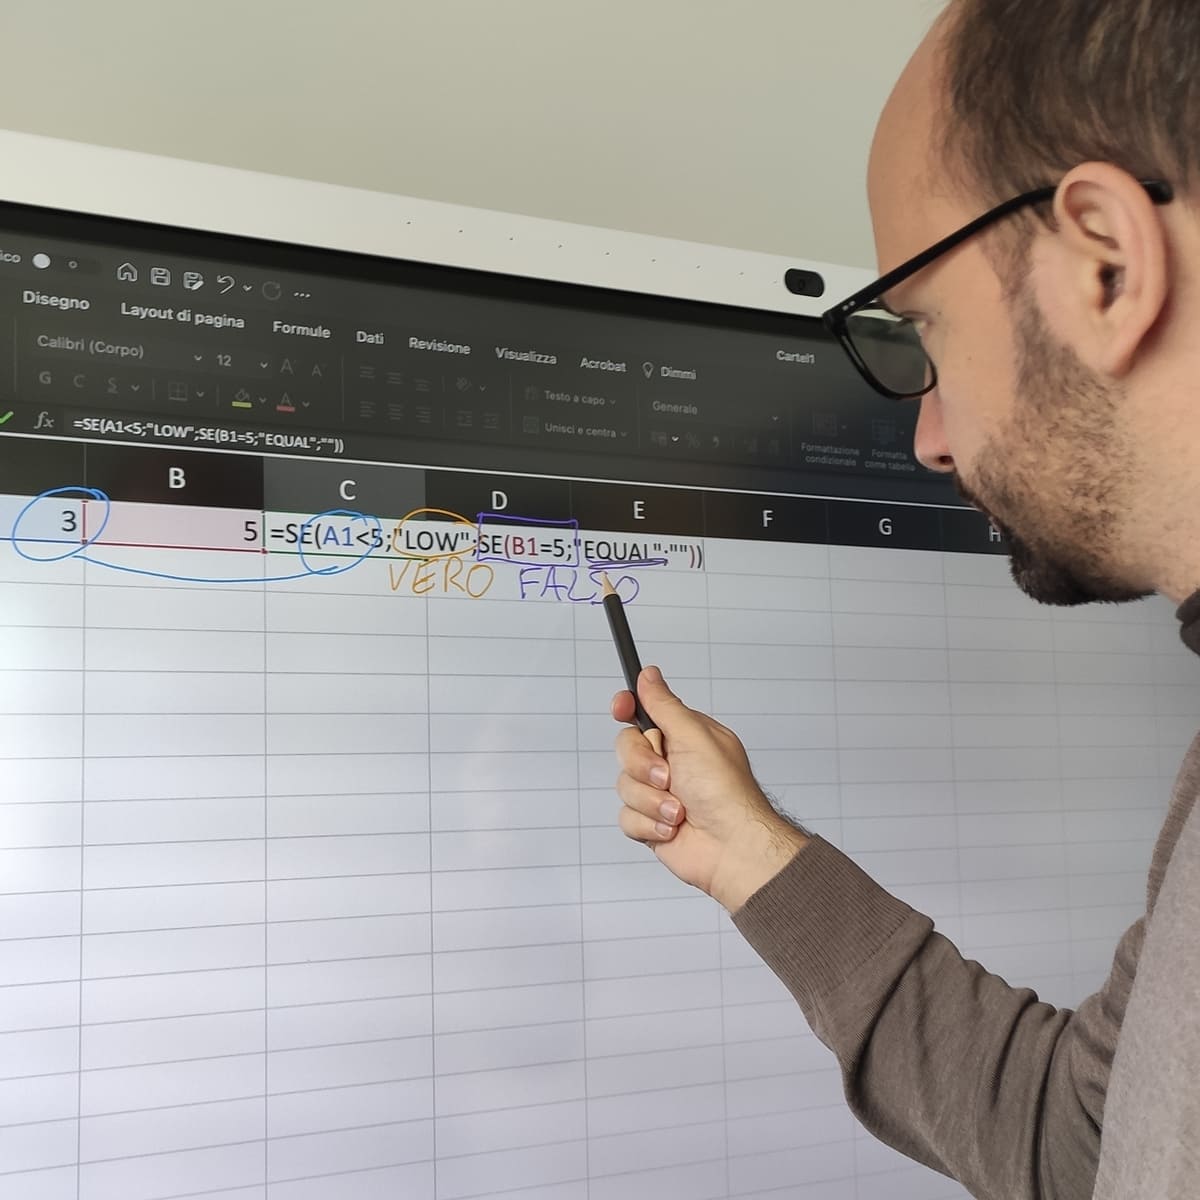 Sulla lavagna IdeaHub Board di Huawei viene mostrato Microsoft Excel e, con la funzione lavagna, viene evidenziato il meccanismo IF-ELSE.